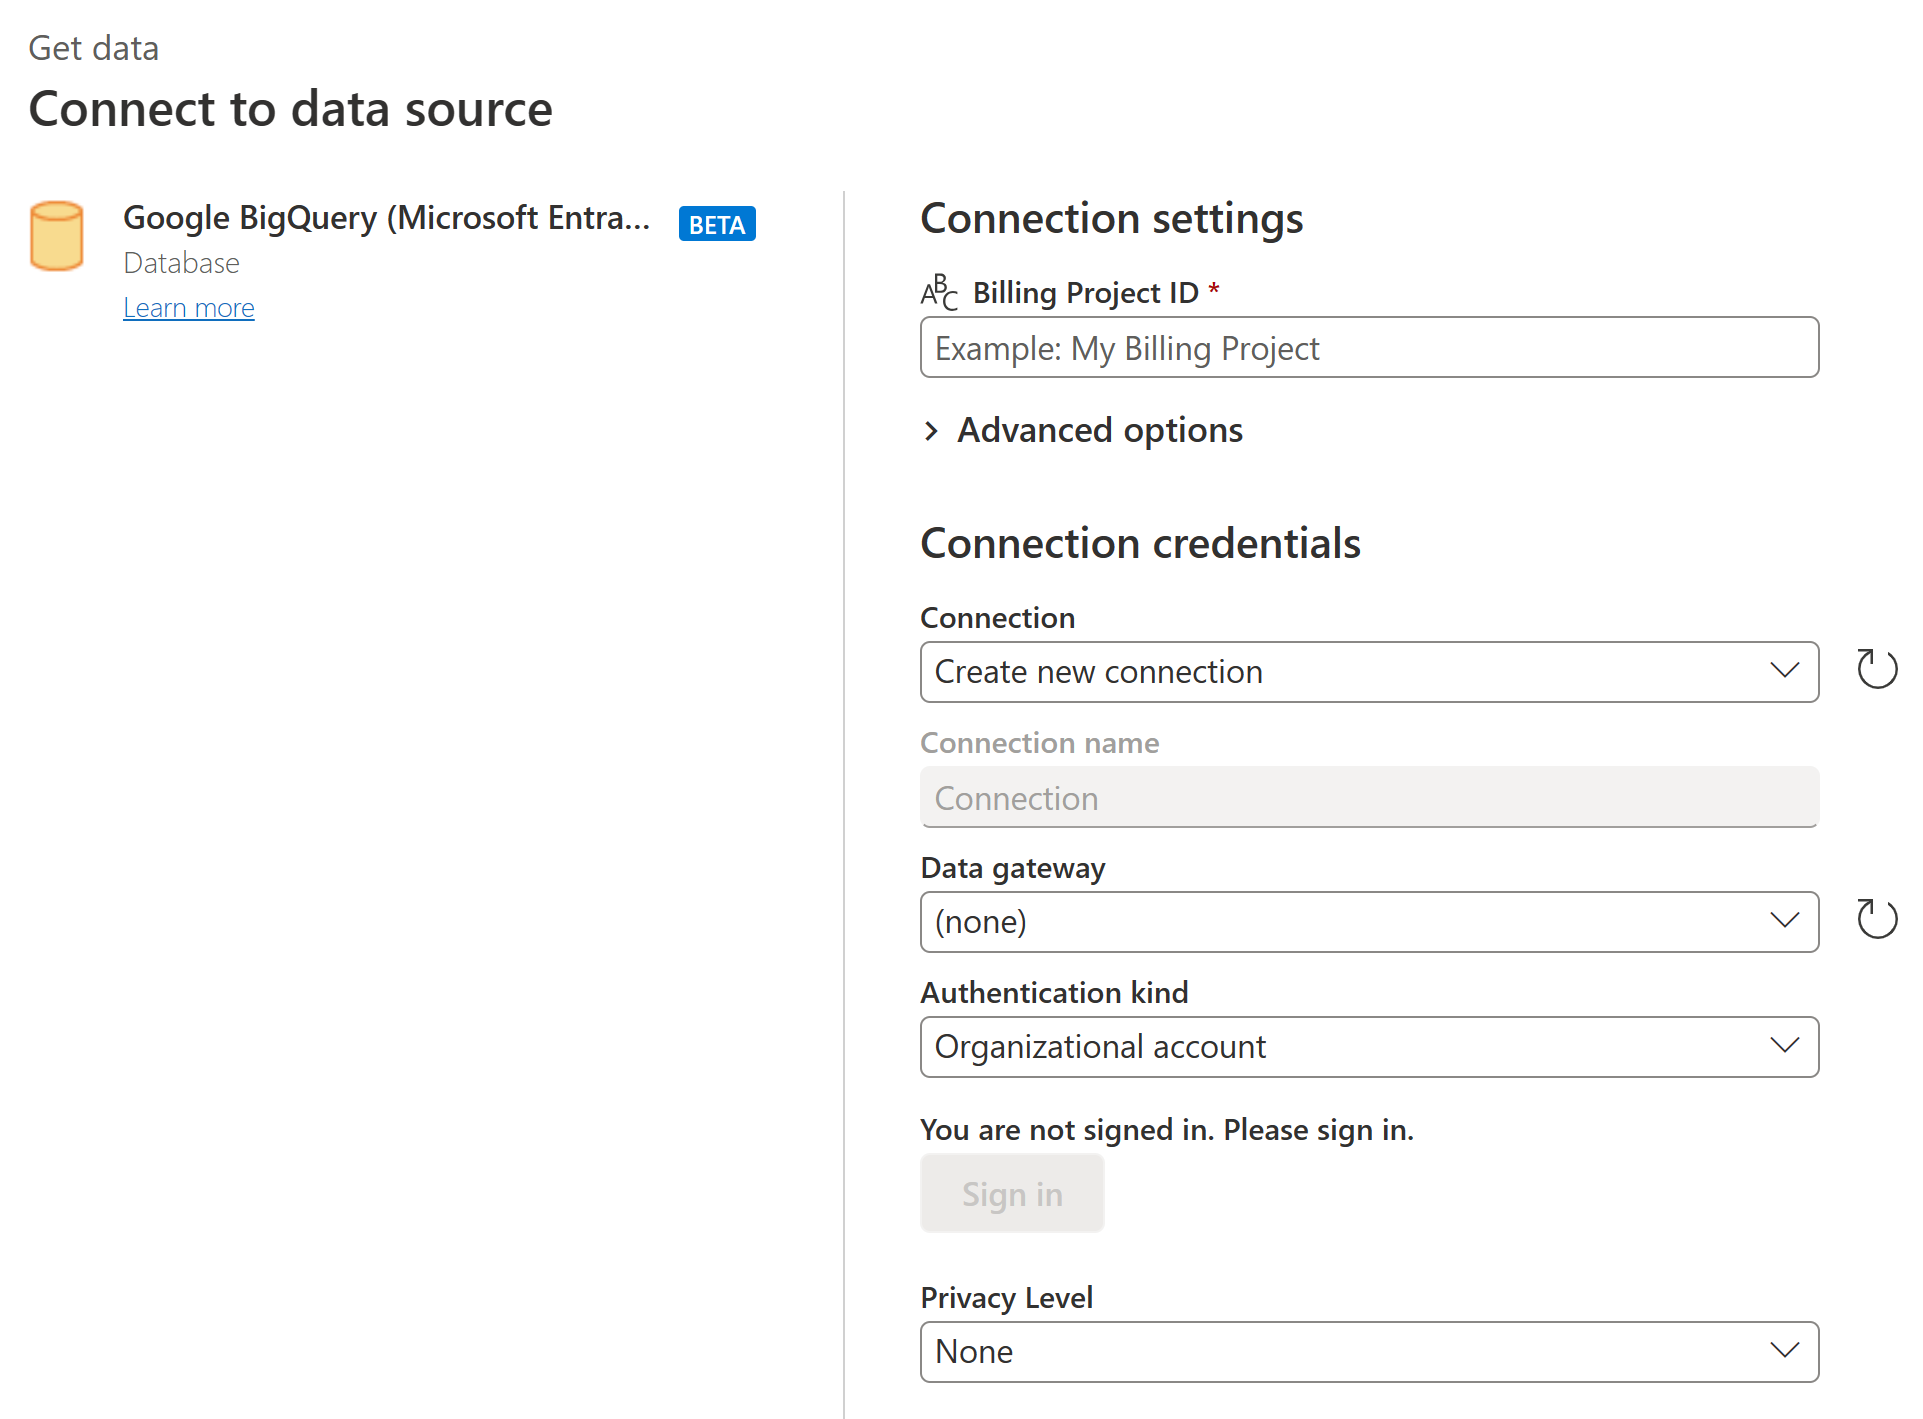 Cuplikan layar dialog Koneksi ke sumber data tempat Anda memasukkan setelan dan kredensial koneksi Google BigQuery (ID Microsoft Entra) Anda.